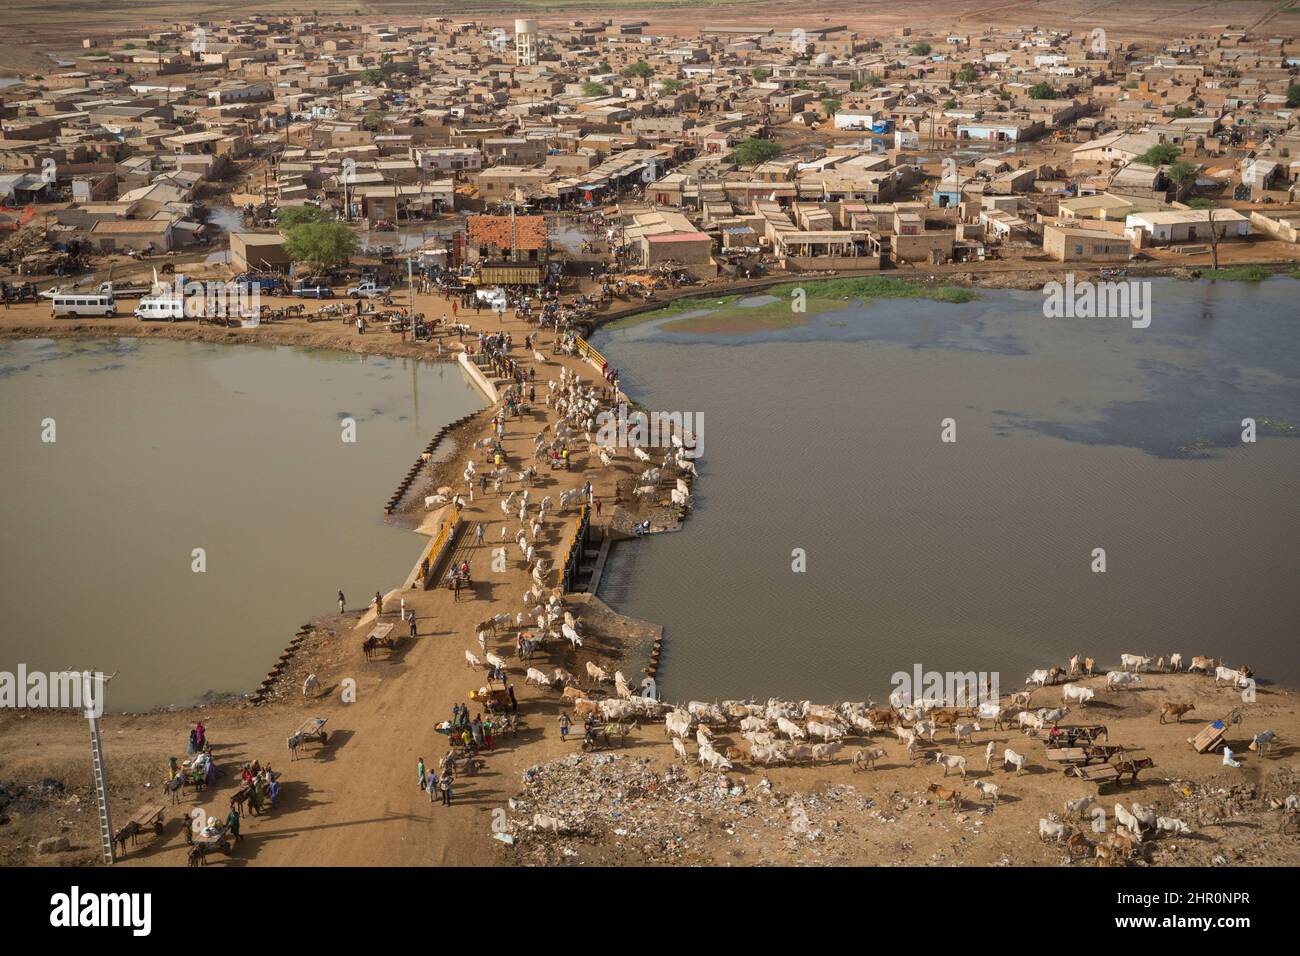 Les vannes de la ville de Mbouboudoum le long du fleuve Sénégal aident à réguler le débit d'eau vers les canaux d'irrigation dans tout le delta du fleuve Sénégal. Banque D'Images